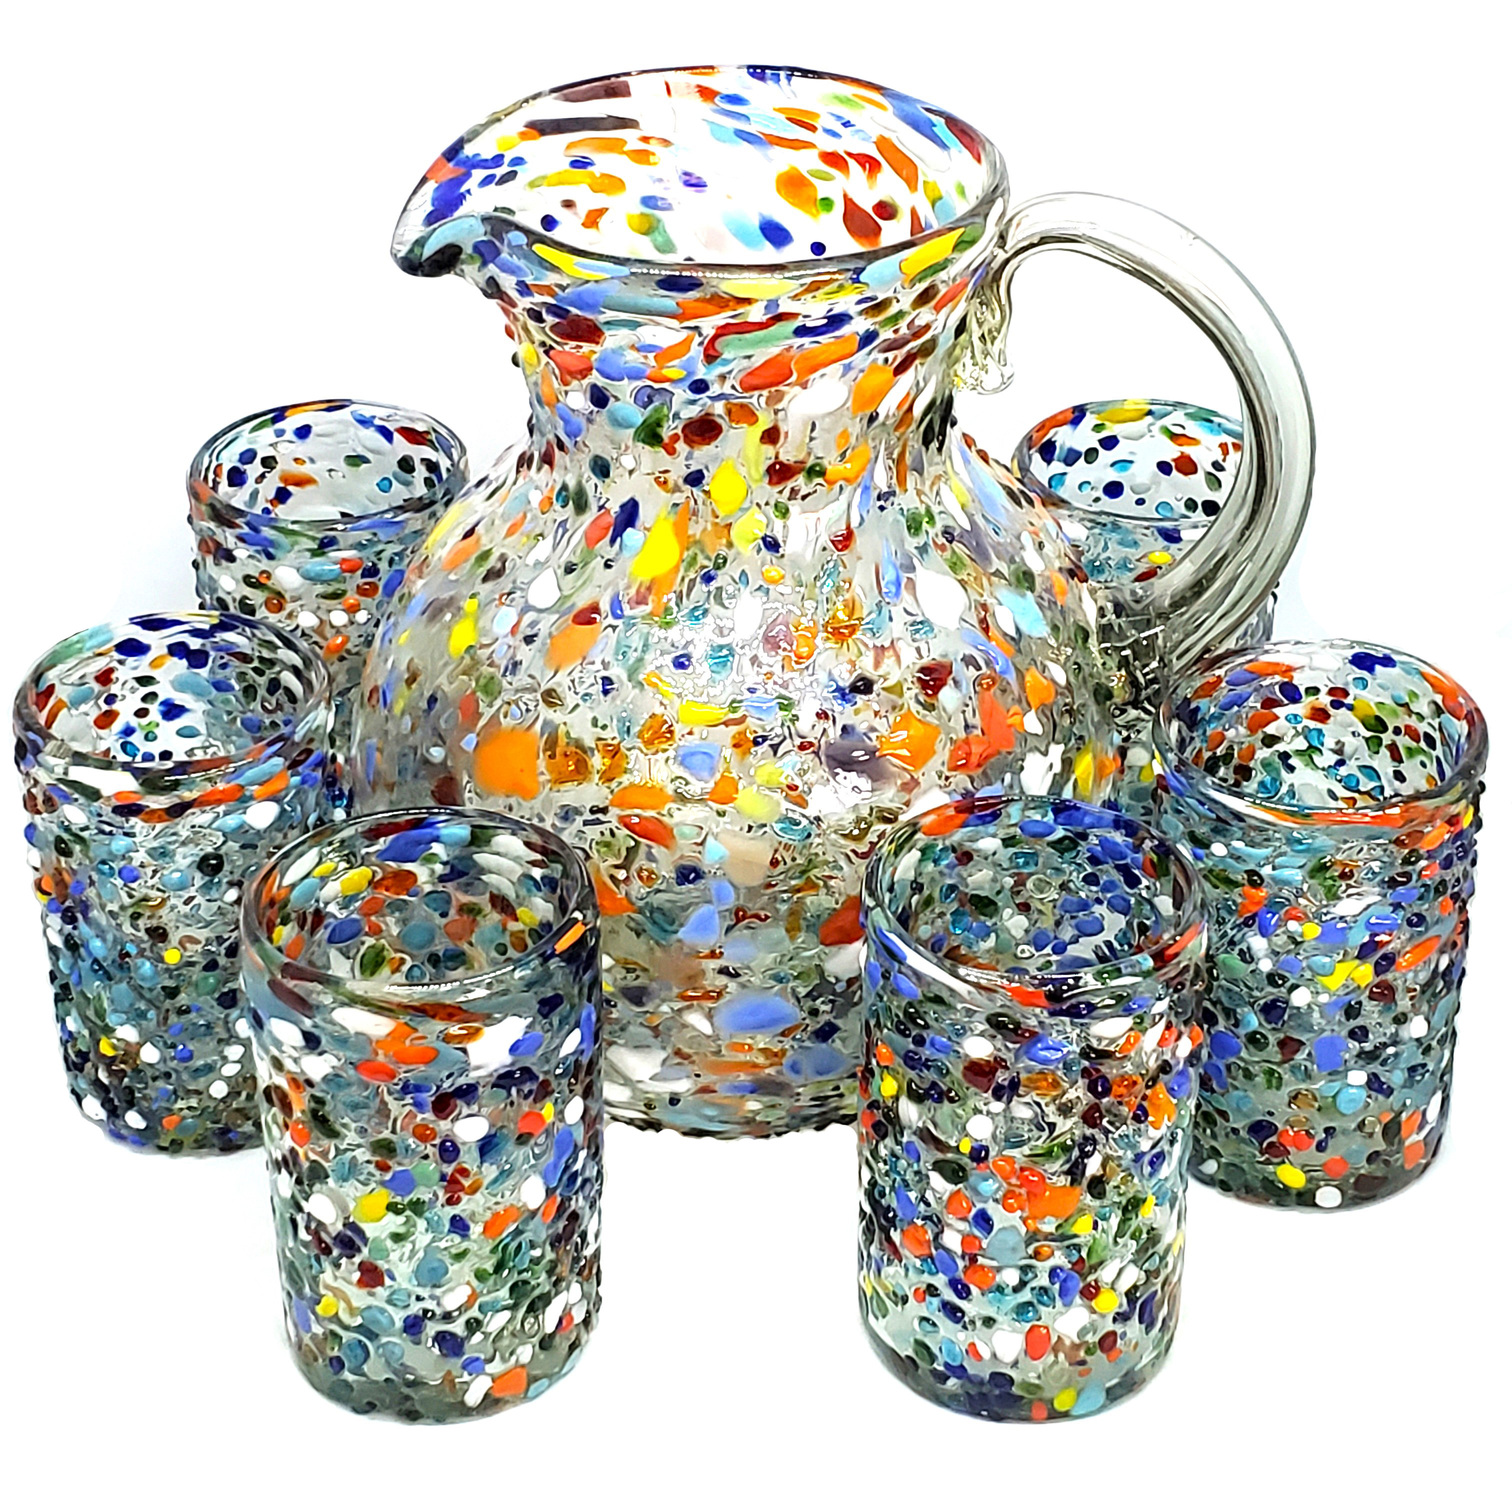 VIDRIO SOPLADO / Juego de jarra y 6 vasos grandes 'Confeti granizado' / Cada juego de jarra y vasos 'Confeti granizado' es una obra de arte por si mismo. Están decorados con cientos de pequeñas piedras de vidrio multicolor, haciendo cada juego único.